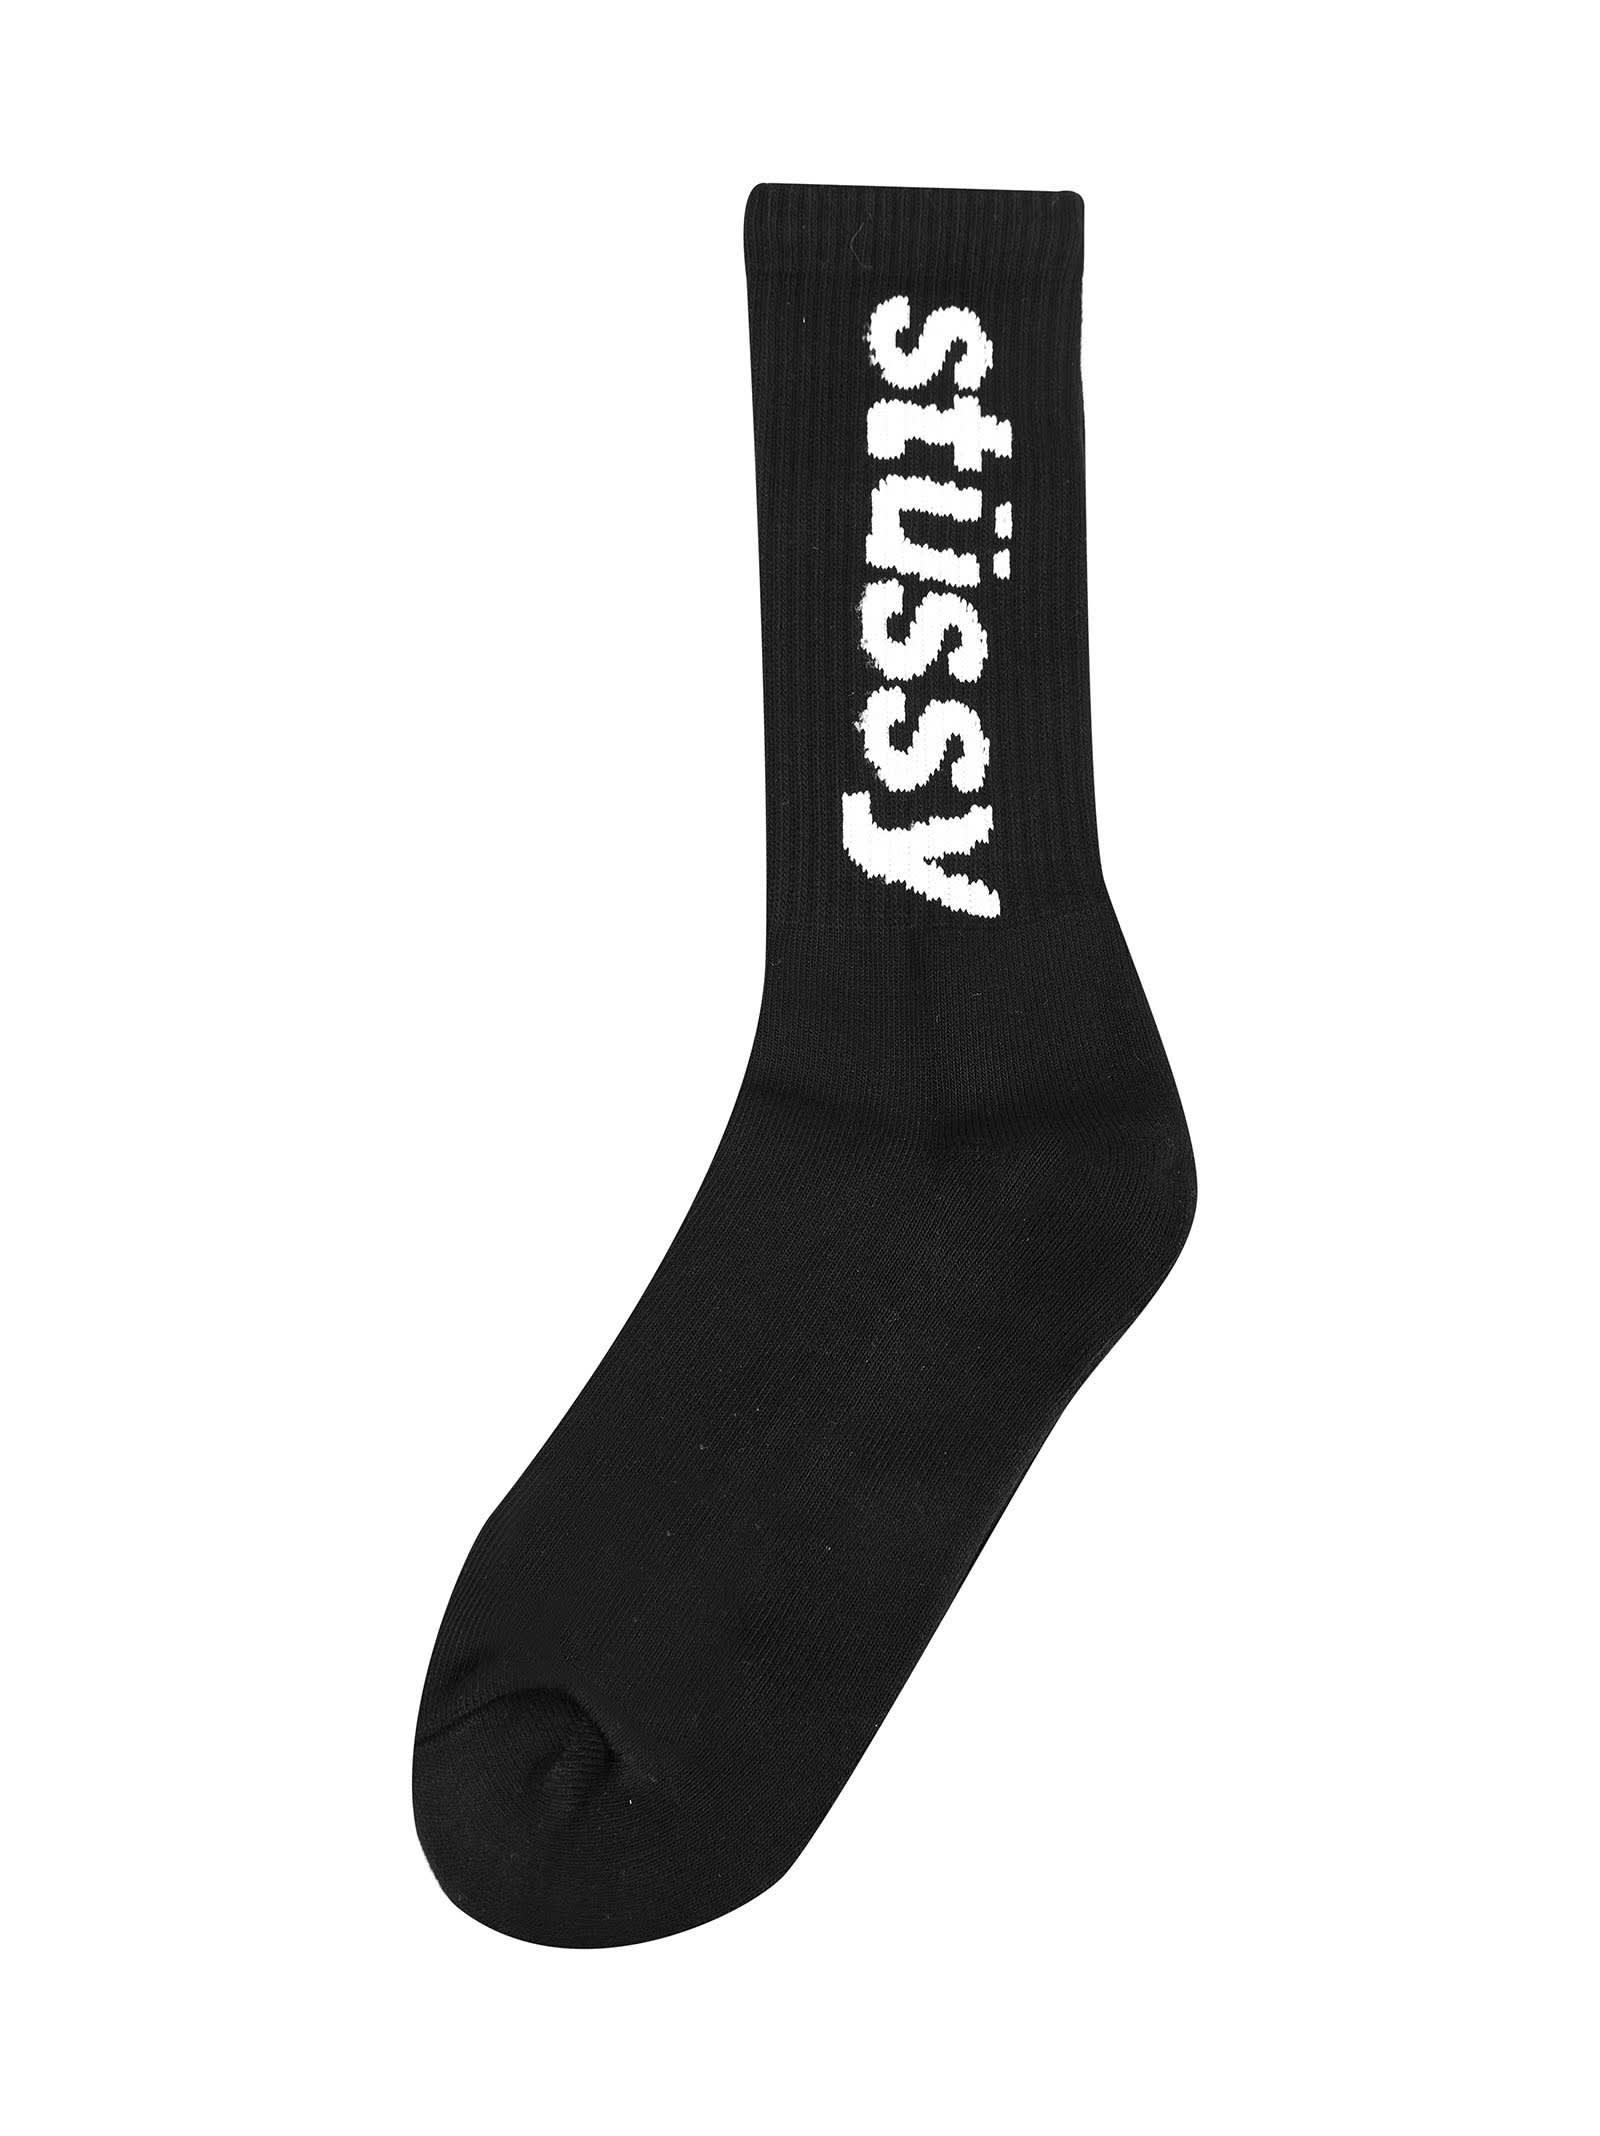 Stussy Helvetica Jacquard Crew Socks In Black